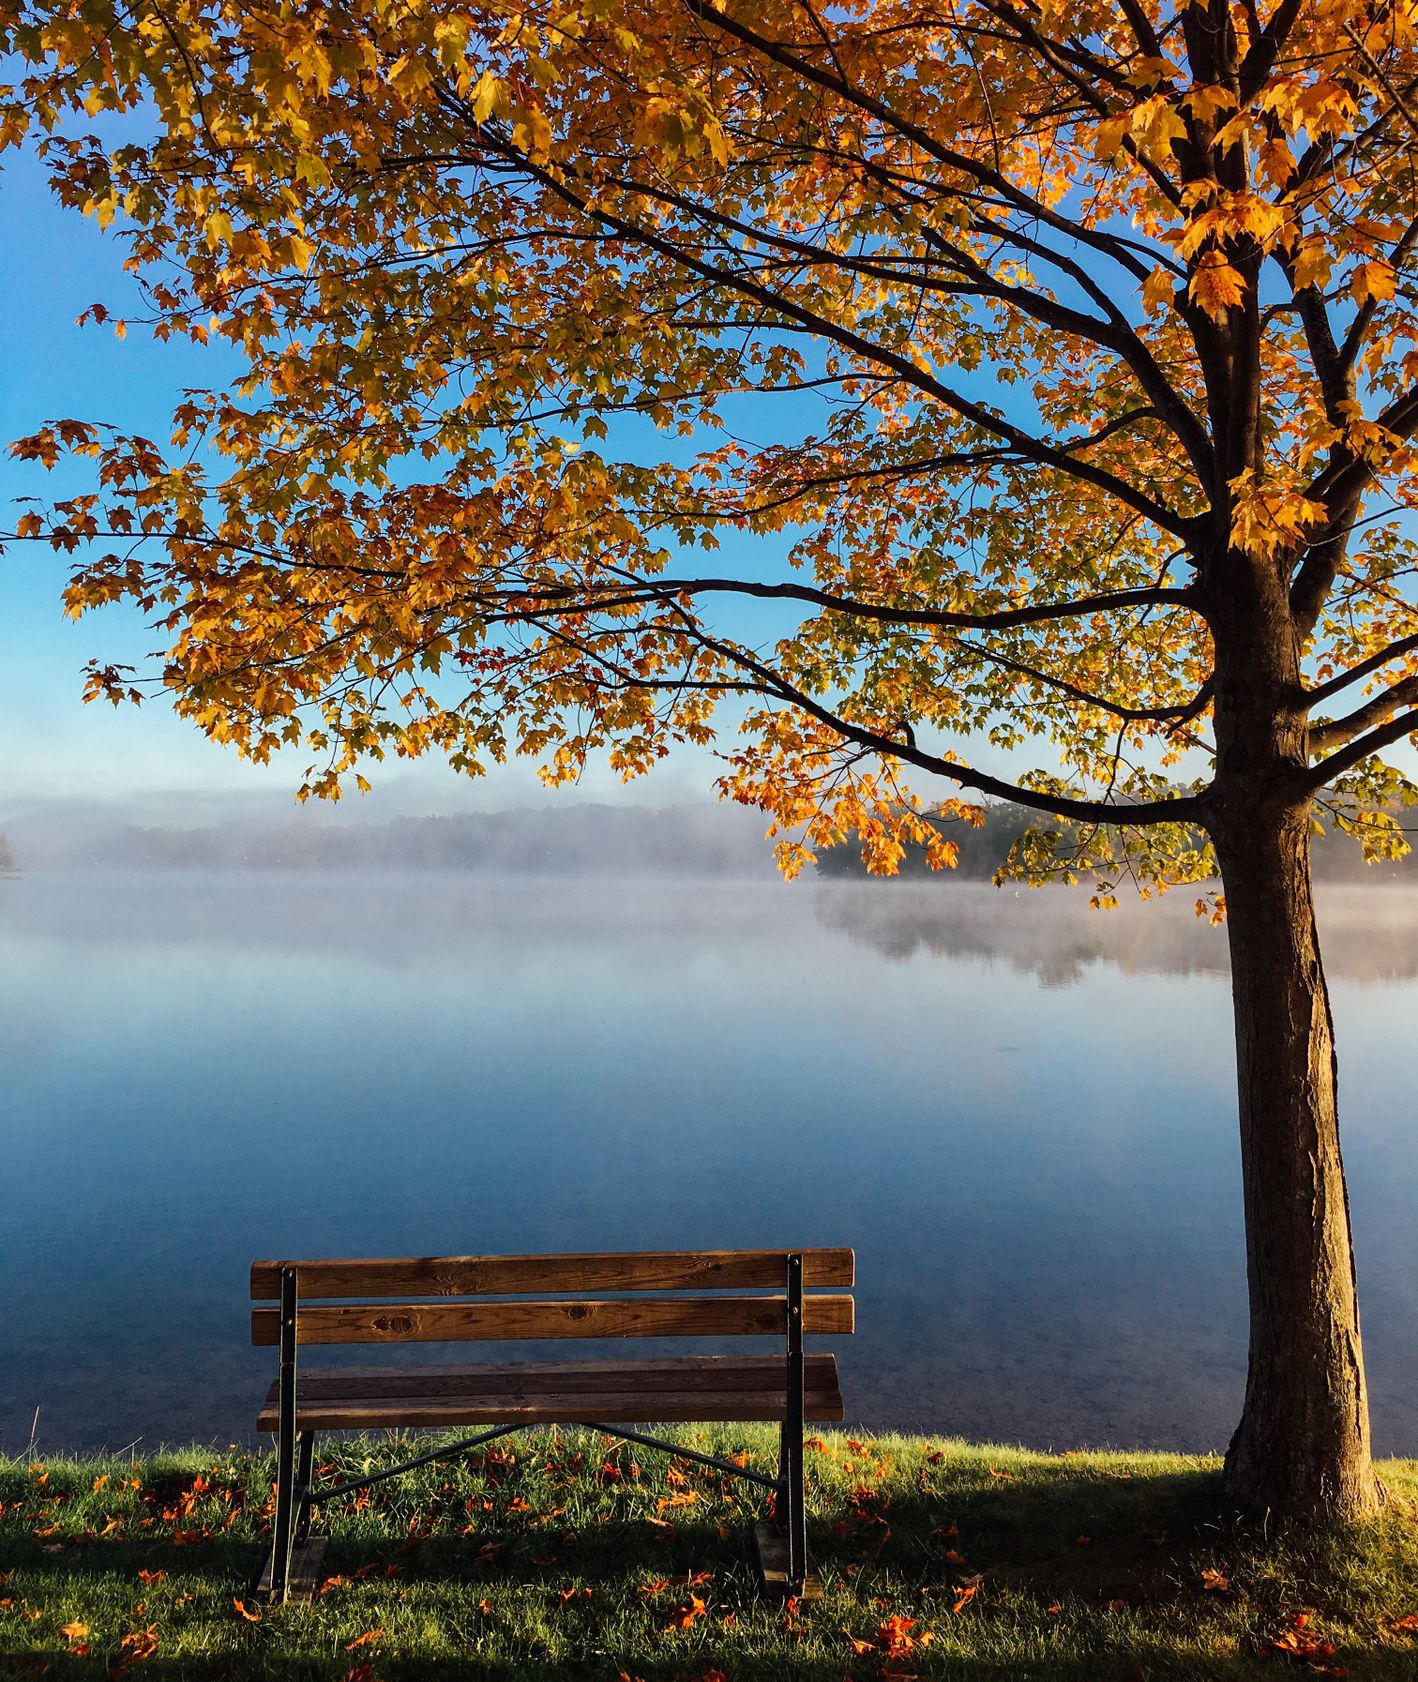 Jesienny pejzaż: drzewo, jezioro i ławka (fot. Aaron Burden / unsplash.com)